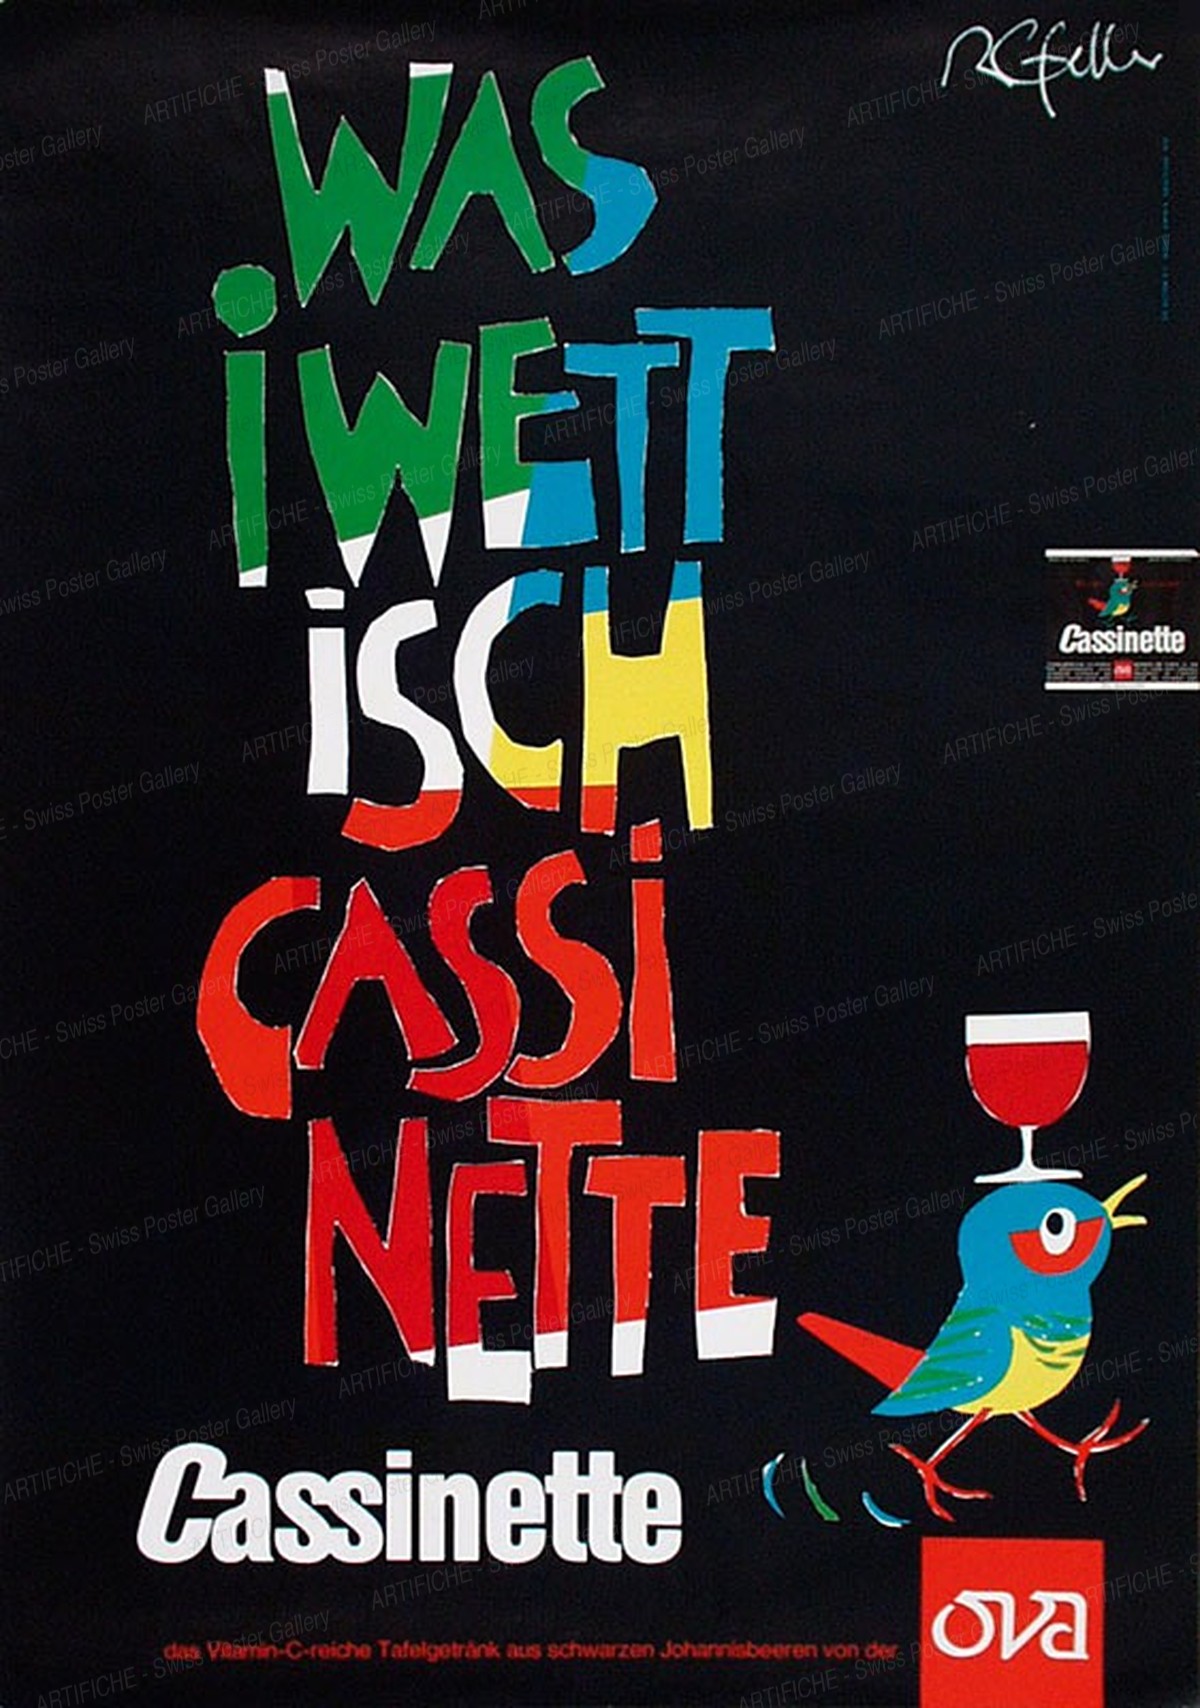 I like Cassinette, Rolf Gfeller